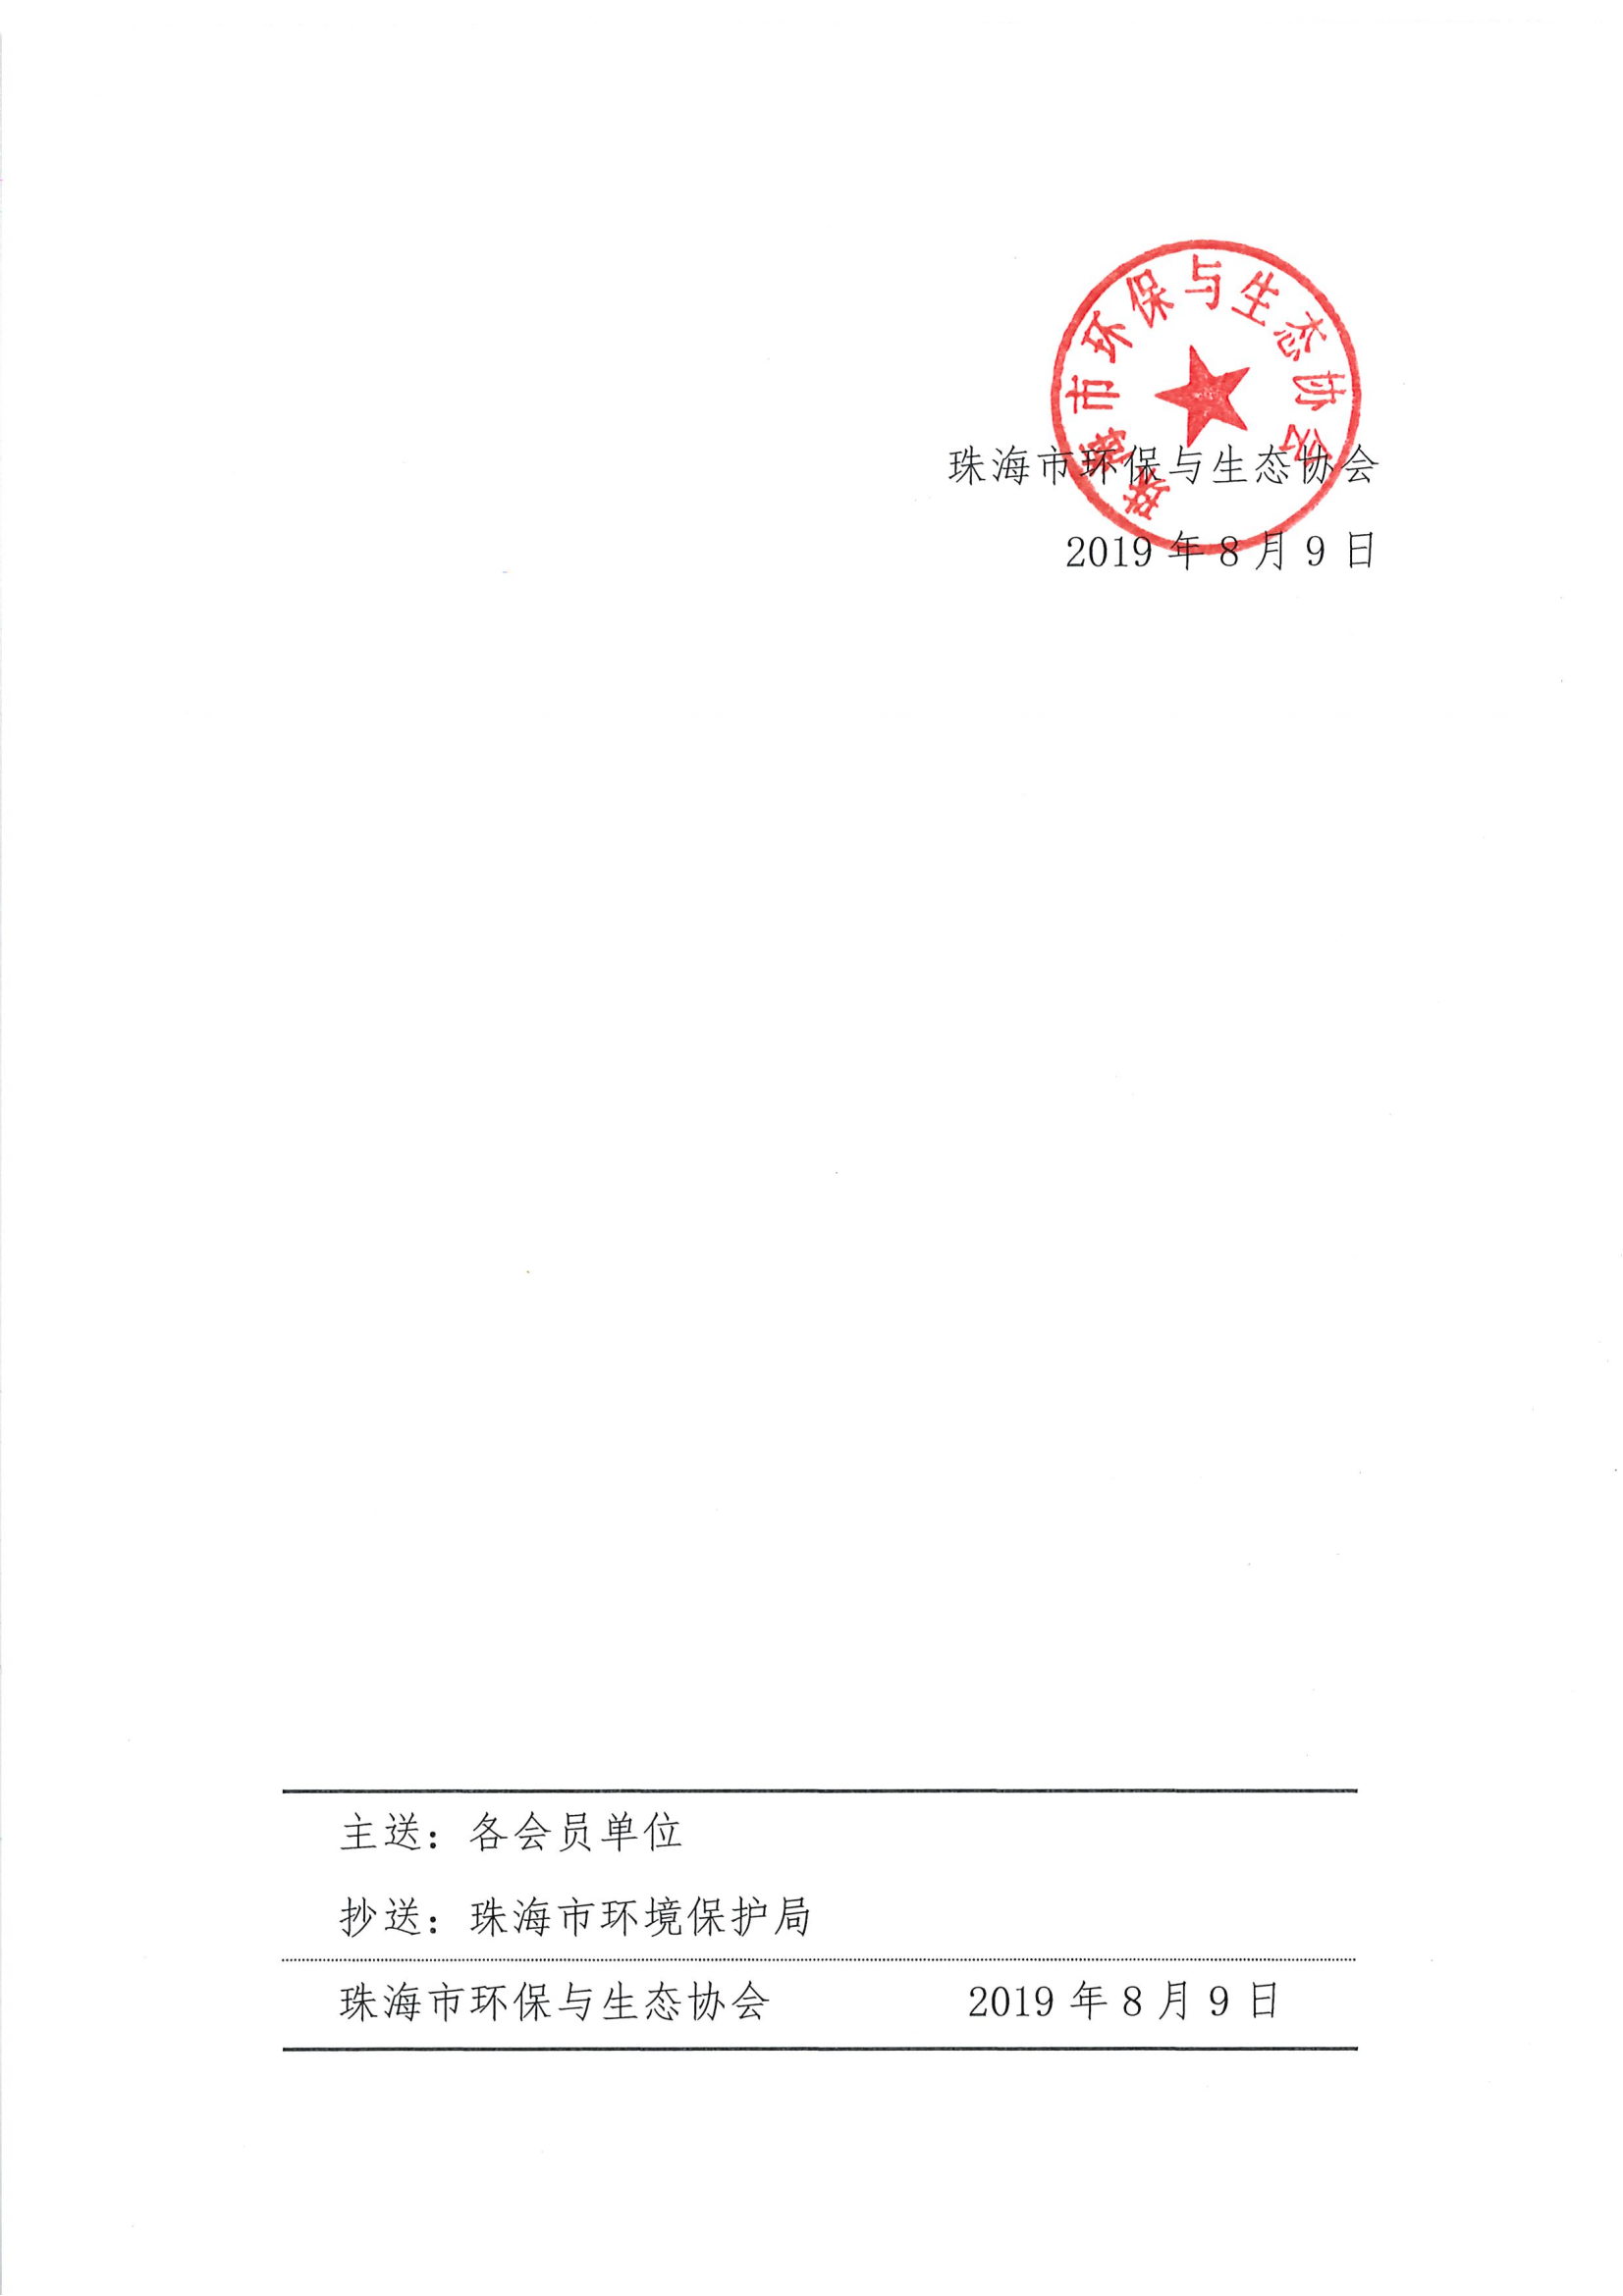 第一届理事会第九次会议纪要-珠环协字[2019]3号_02.png